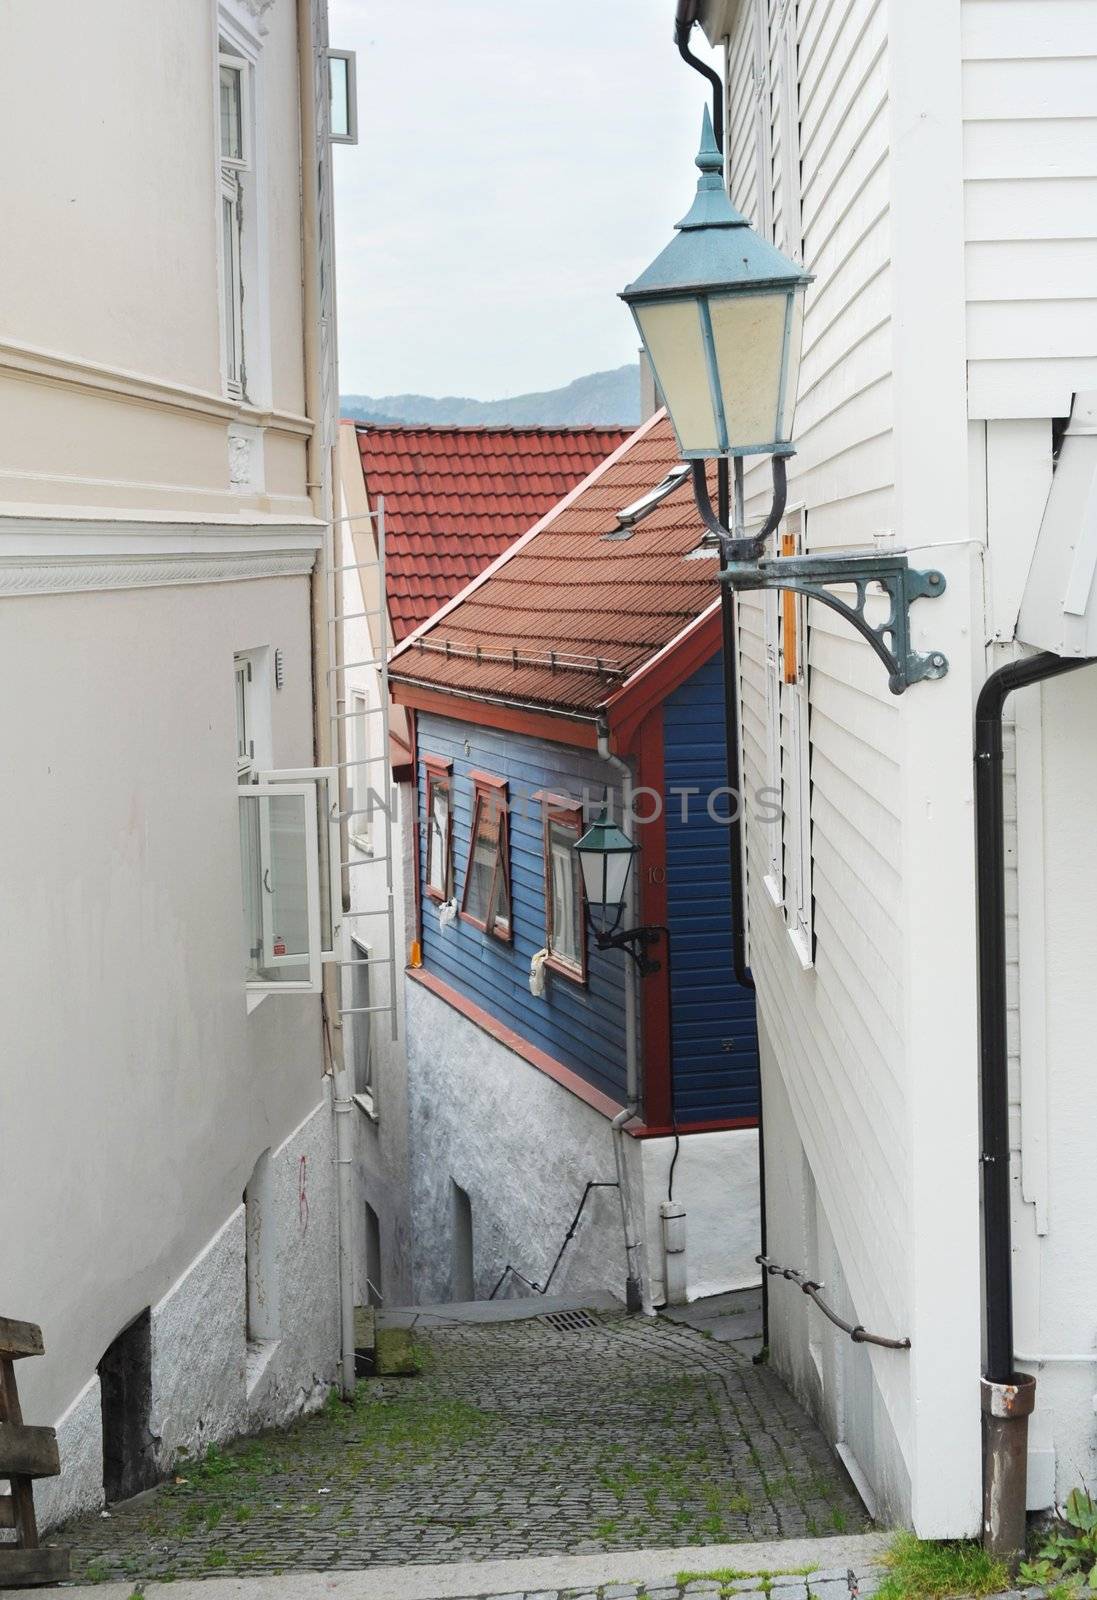 Old part of norwegian city Bergen - Bryggen